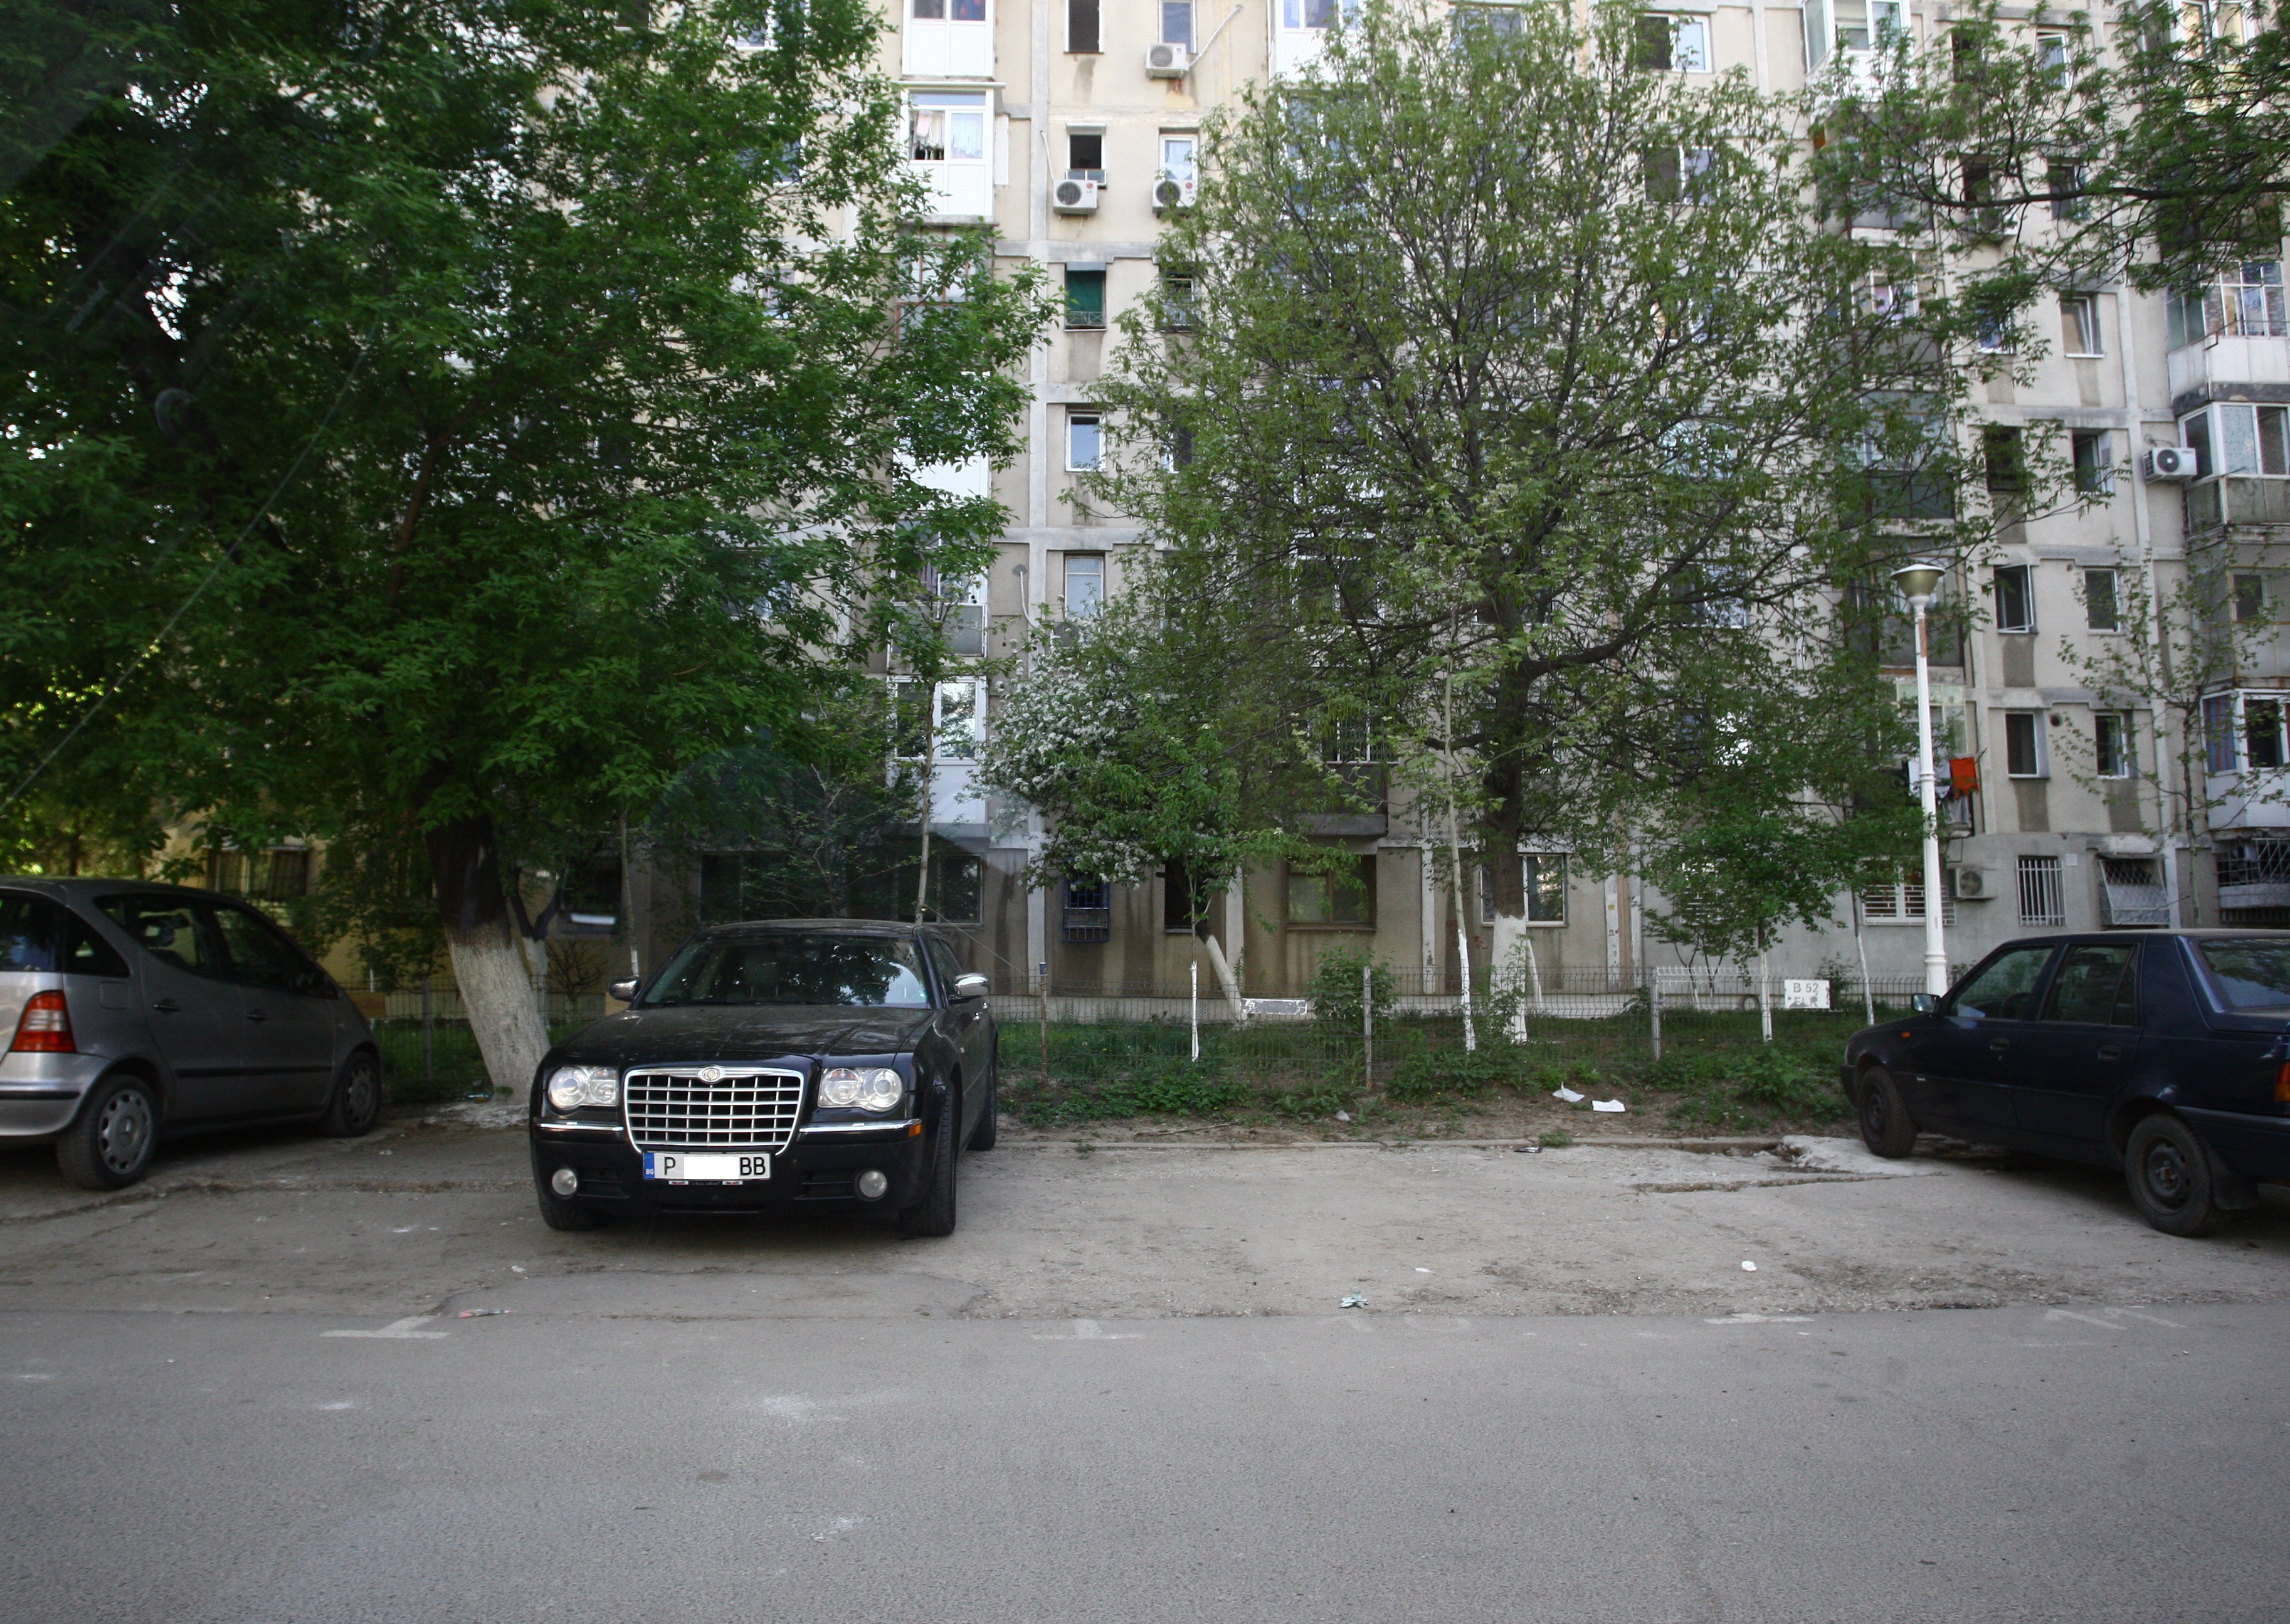 Masina lui Stefan Stan, in spatele blocului in care locuieste mama sa